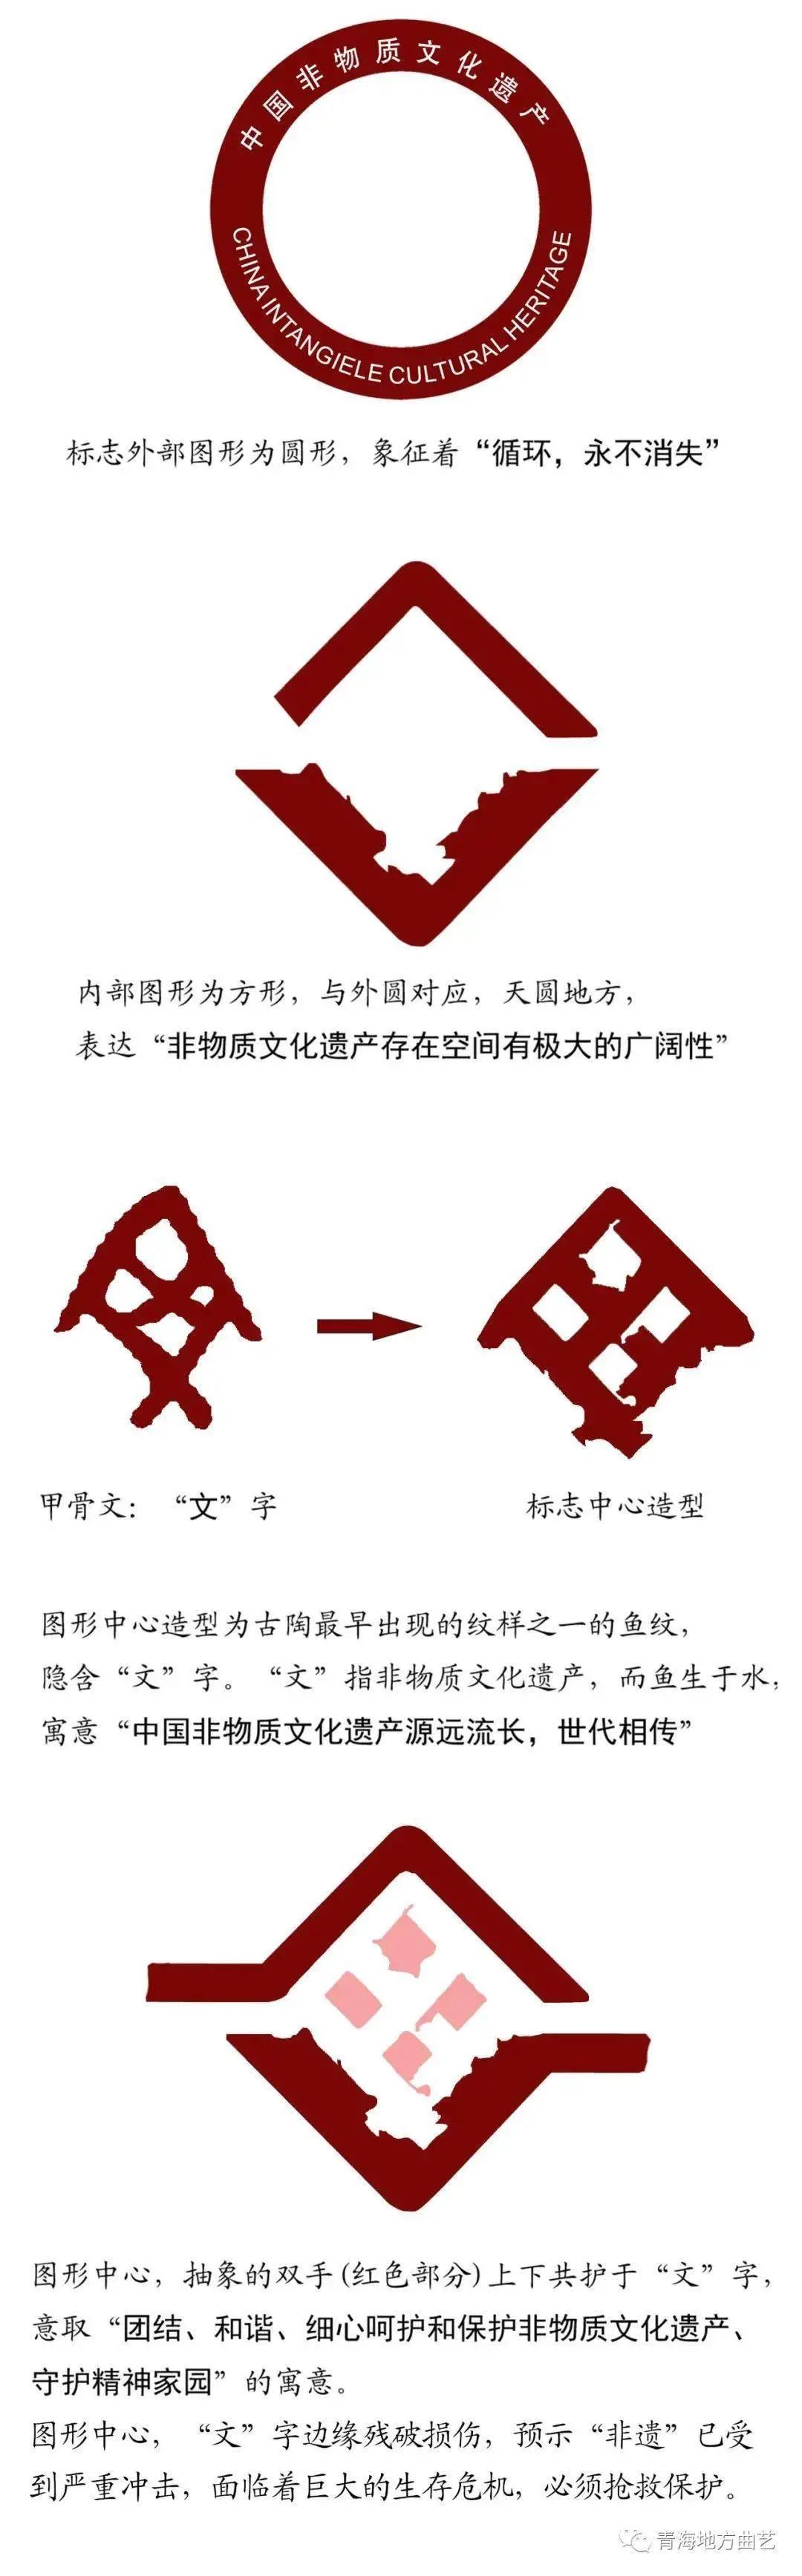 中国非物质文化遗产标志及其含义